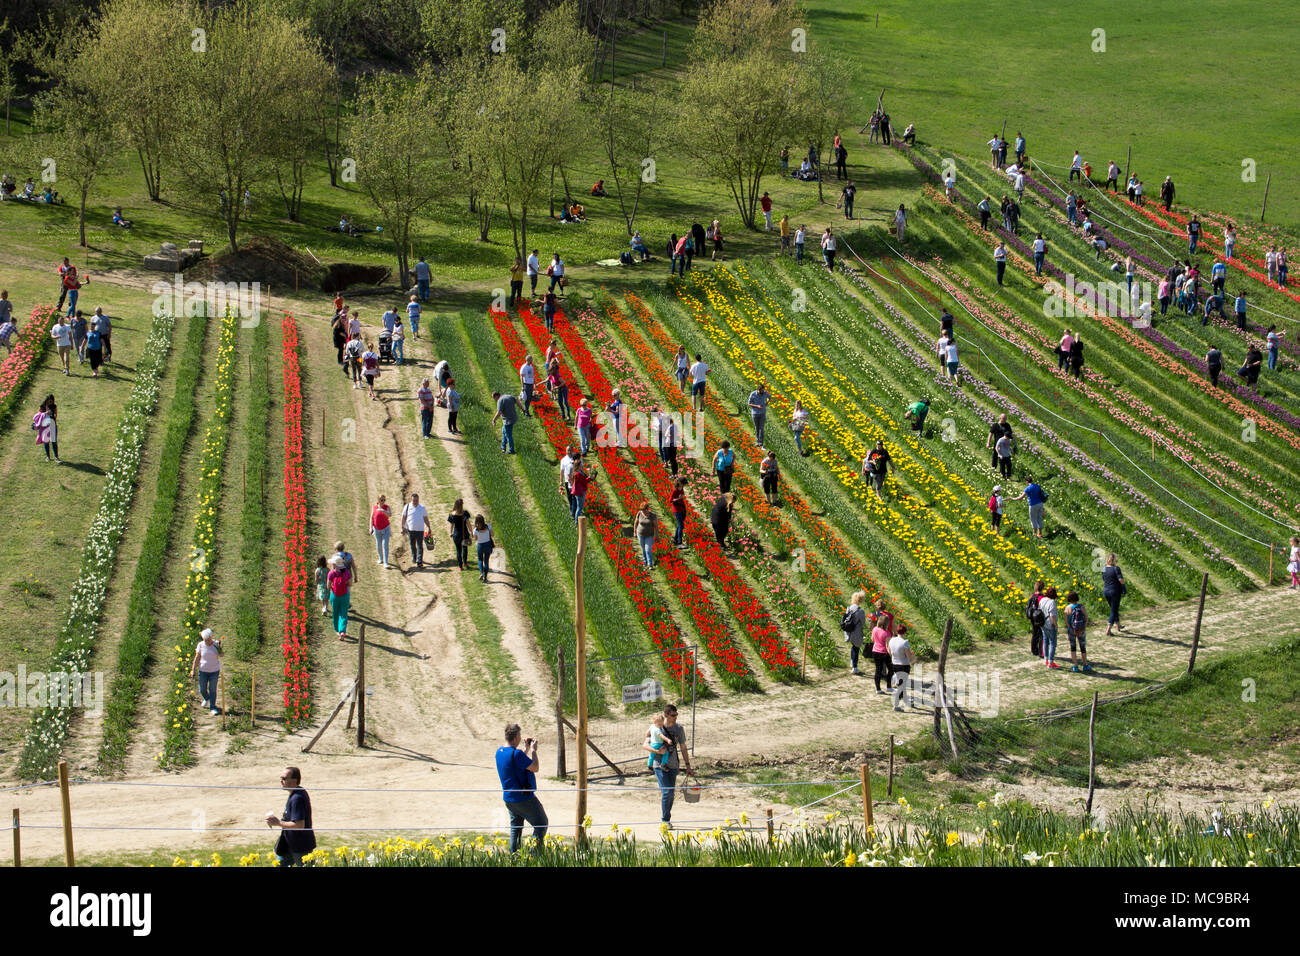 Persone picking tulipani e narcisi in Ungheria Foto Stock